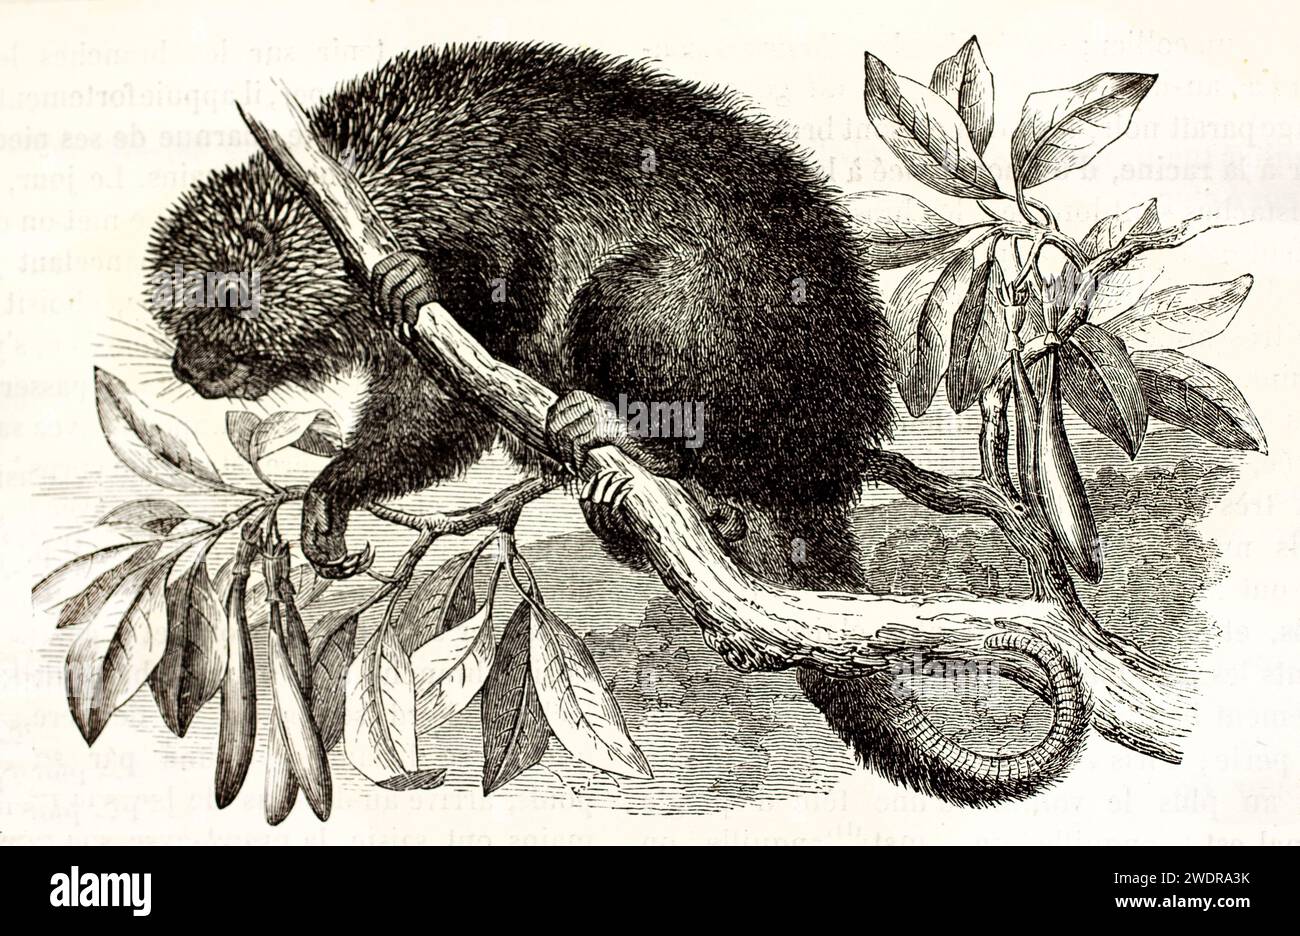 Alte gravierte Illustration von mexikanischem Haarigen Zwergschwein auf einem Zweig. Erstellt von Zimmermann, veröffentlicht auf Brehm, Les Mammifers, Baillière et fils, P. Stockfoto